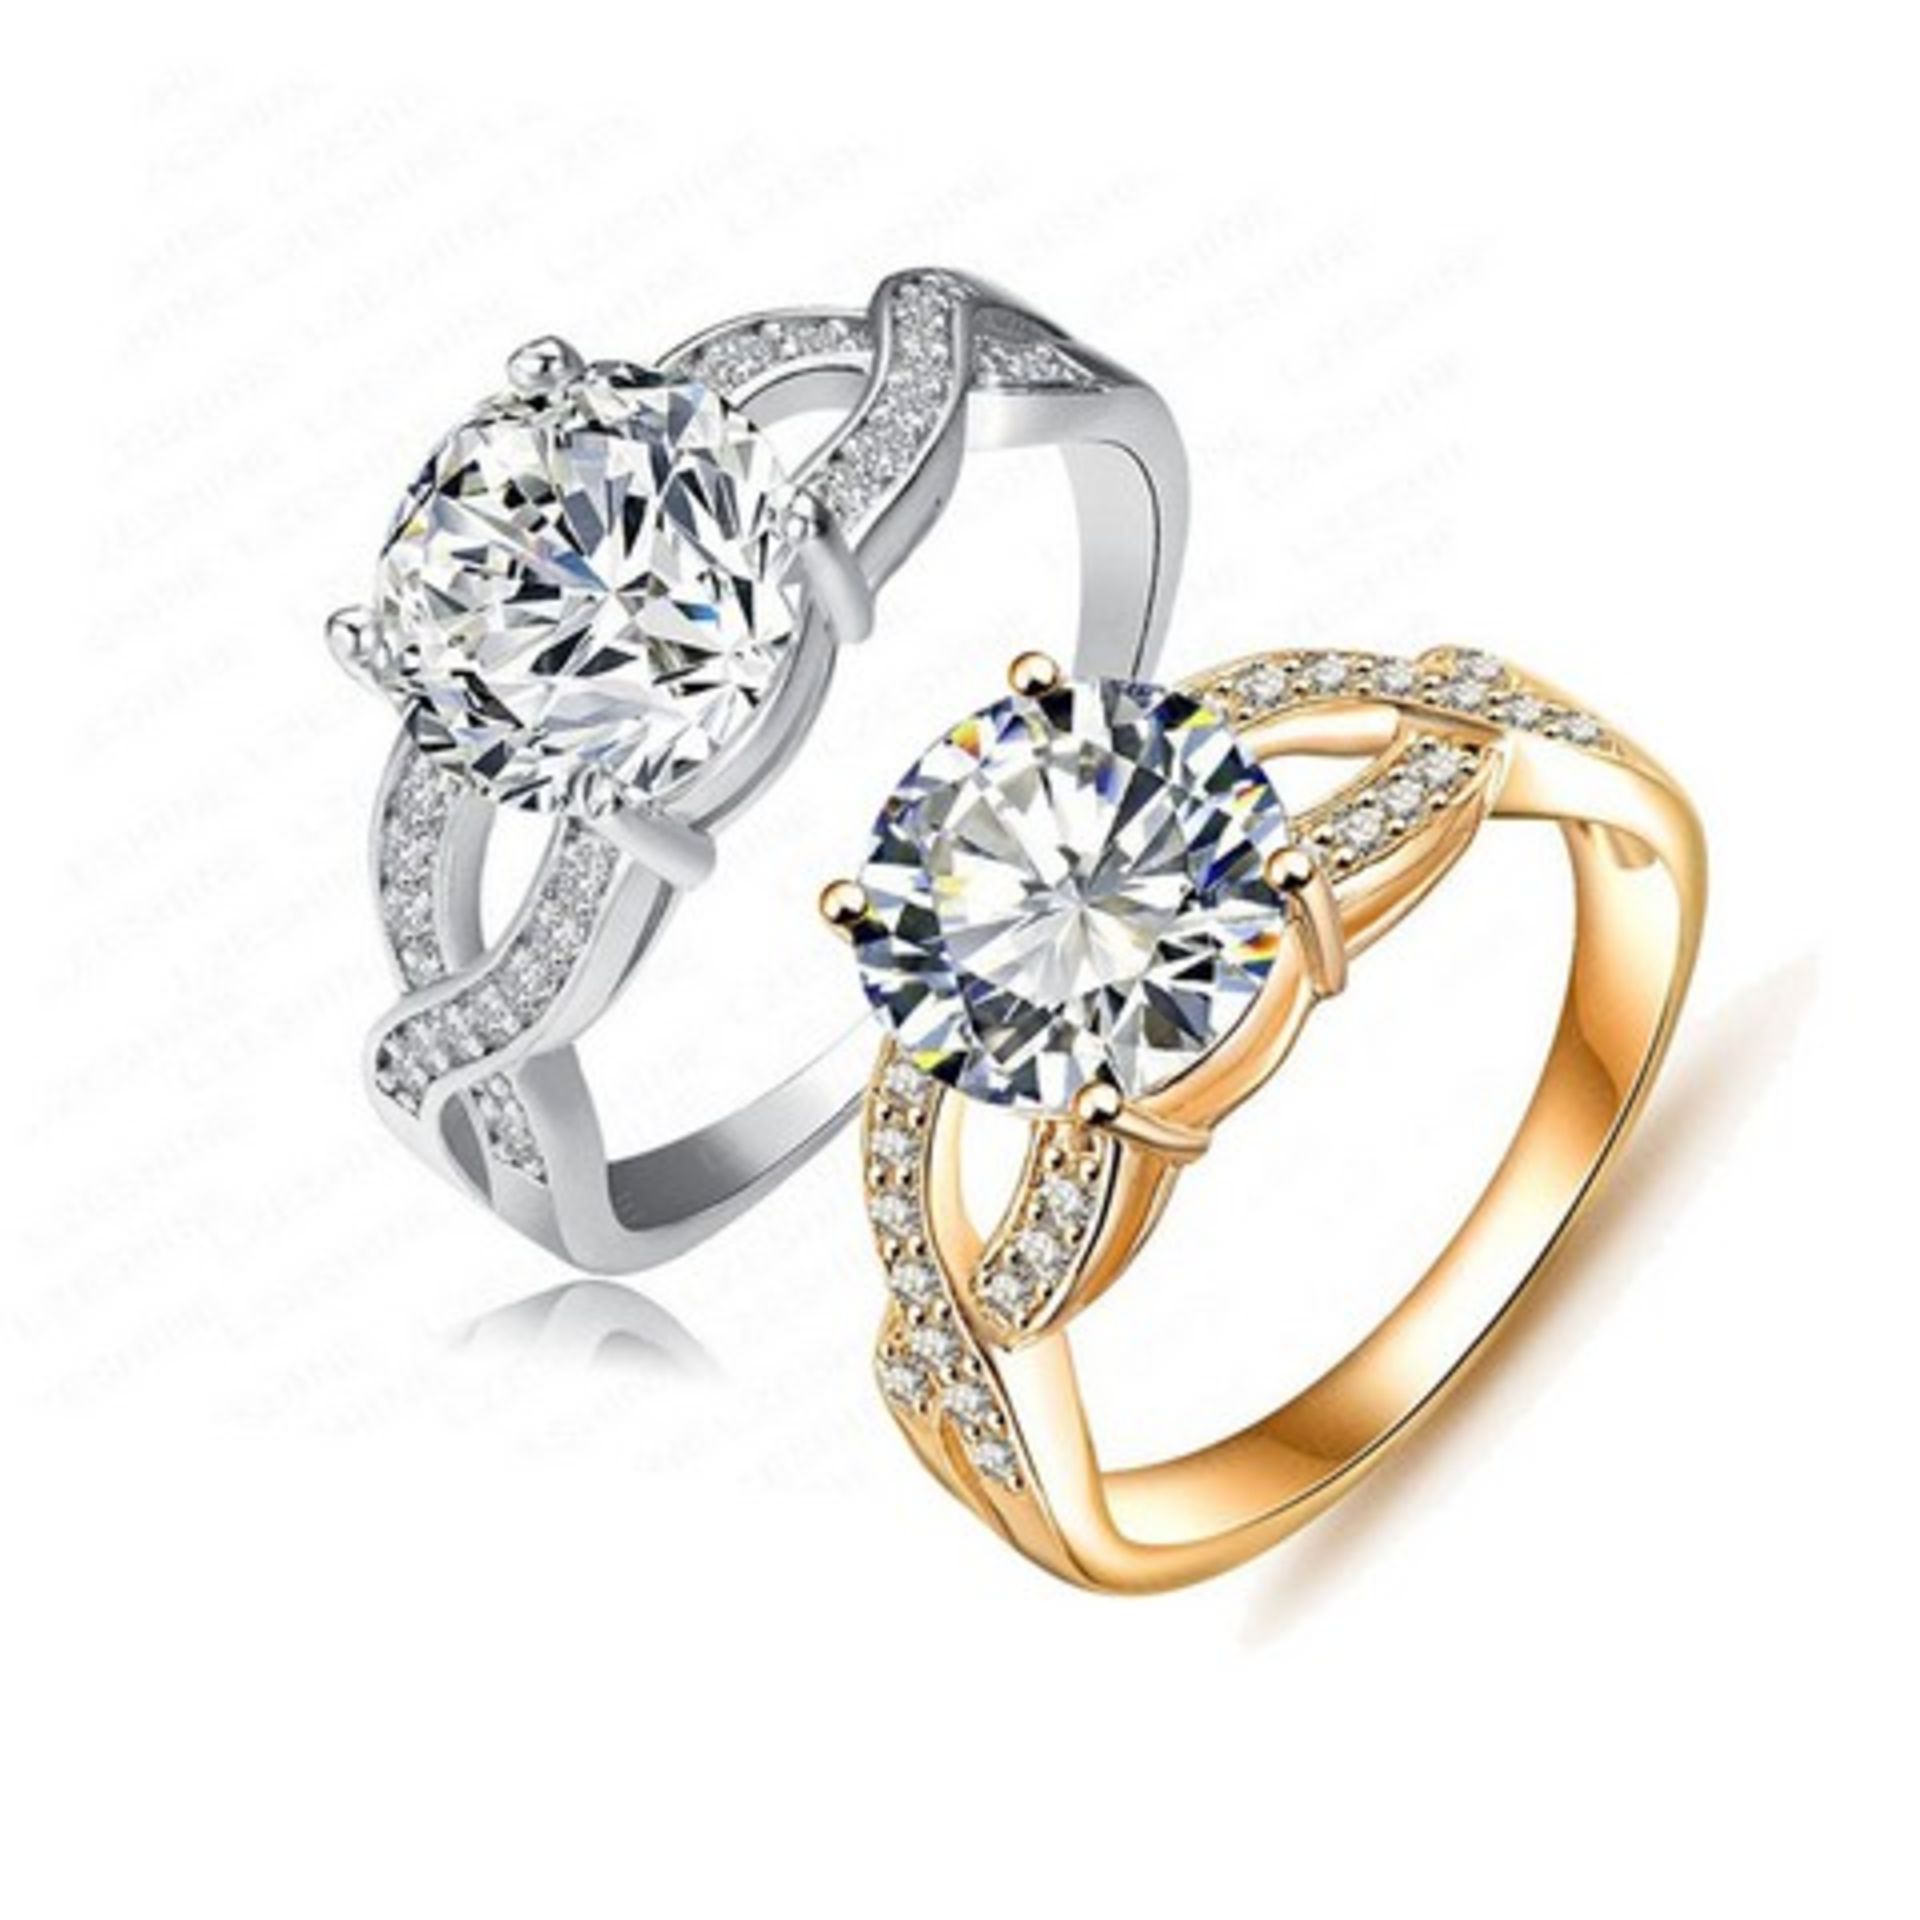 + VAT Brand New Platinum Plated White Stone ring (Left Ring on Image)